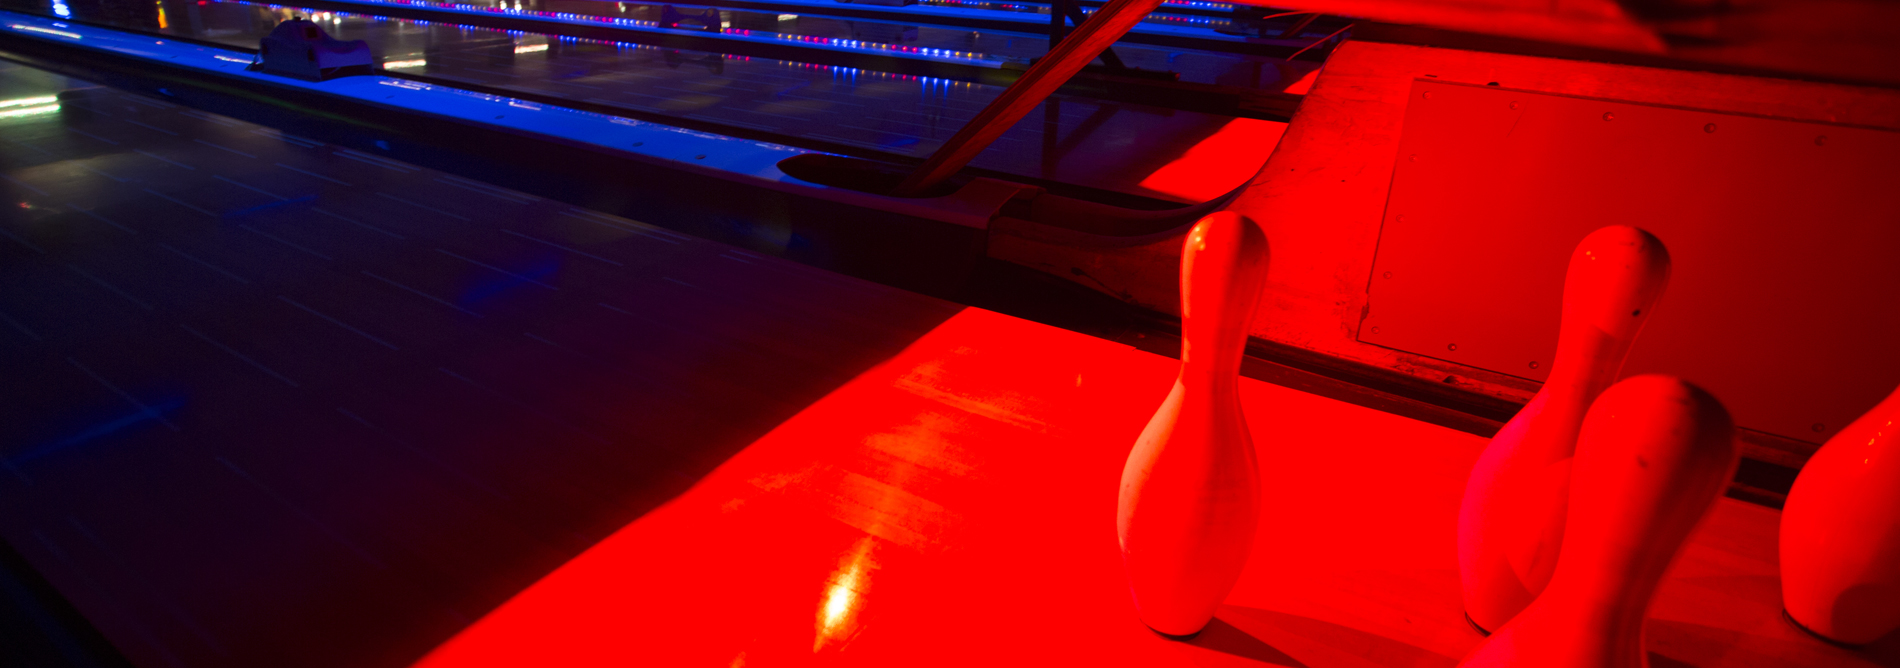 QubicaAMF-bowling-CENTERPUNCH-Pin-Deck-Illumination-Built-for-Bowling-banner.jpg